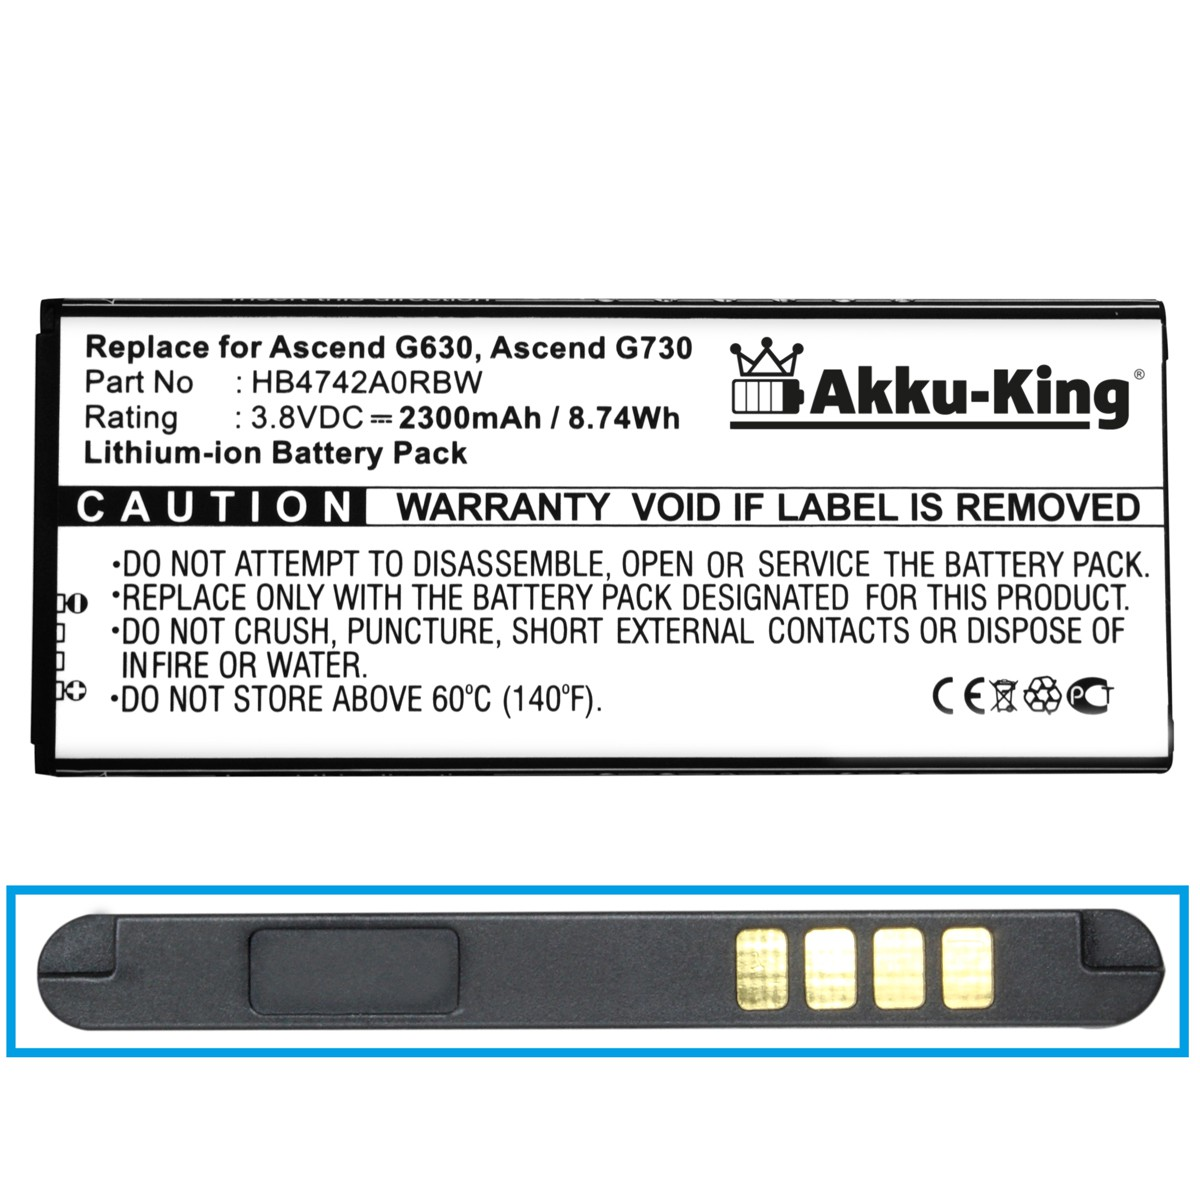 Huawei Handy-Akku, Li-Ion HB4742A0RBC 3.8 AKKU-KING Akku kompatibel mit Volt, 2300mAh